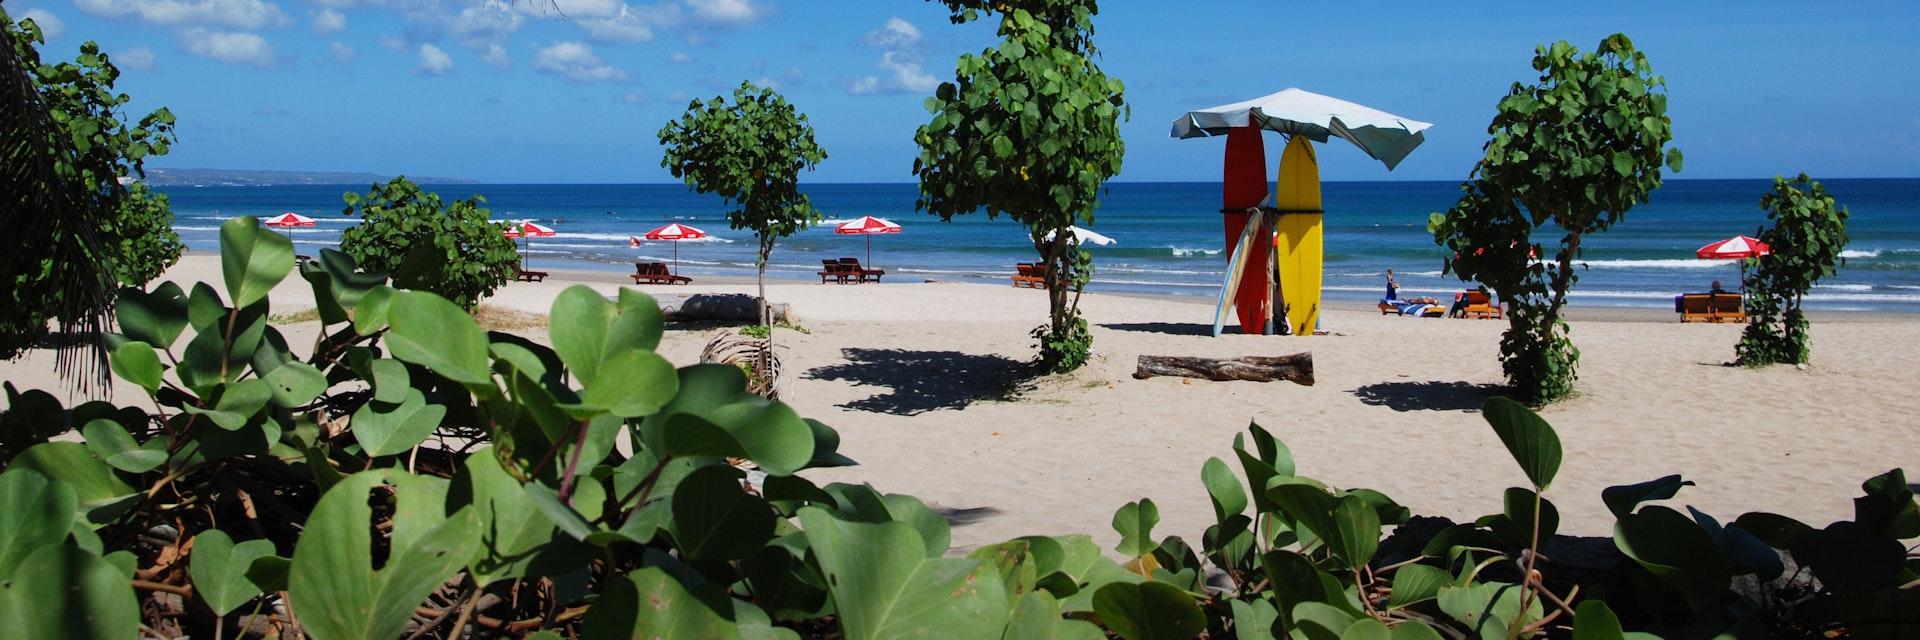 Bali, Kuta Beach